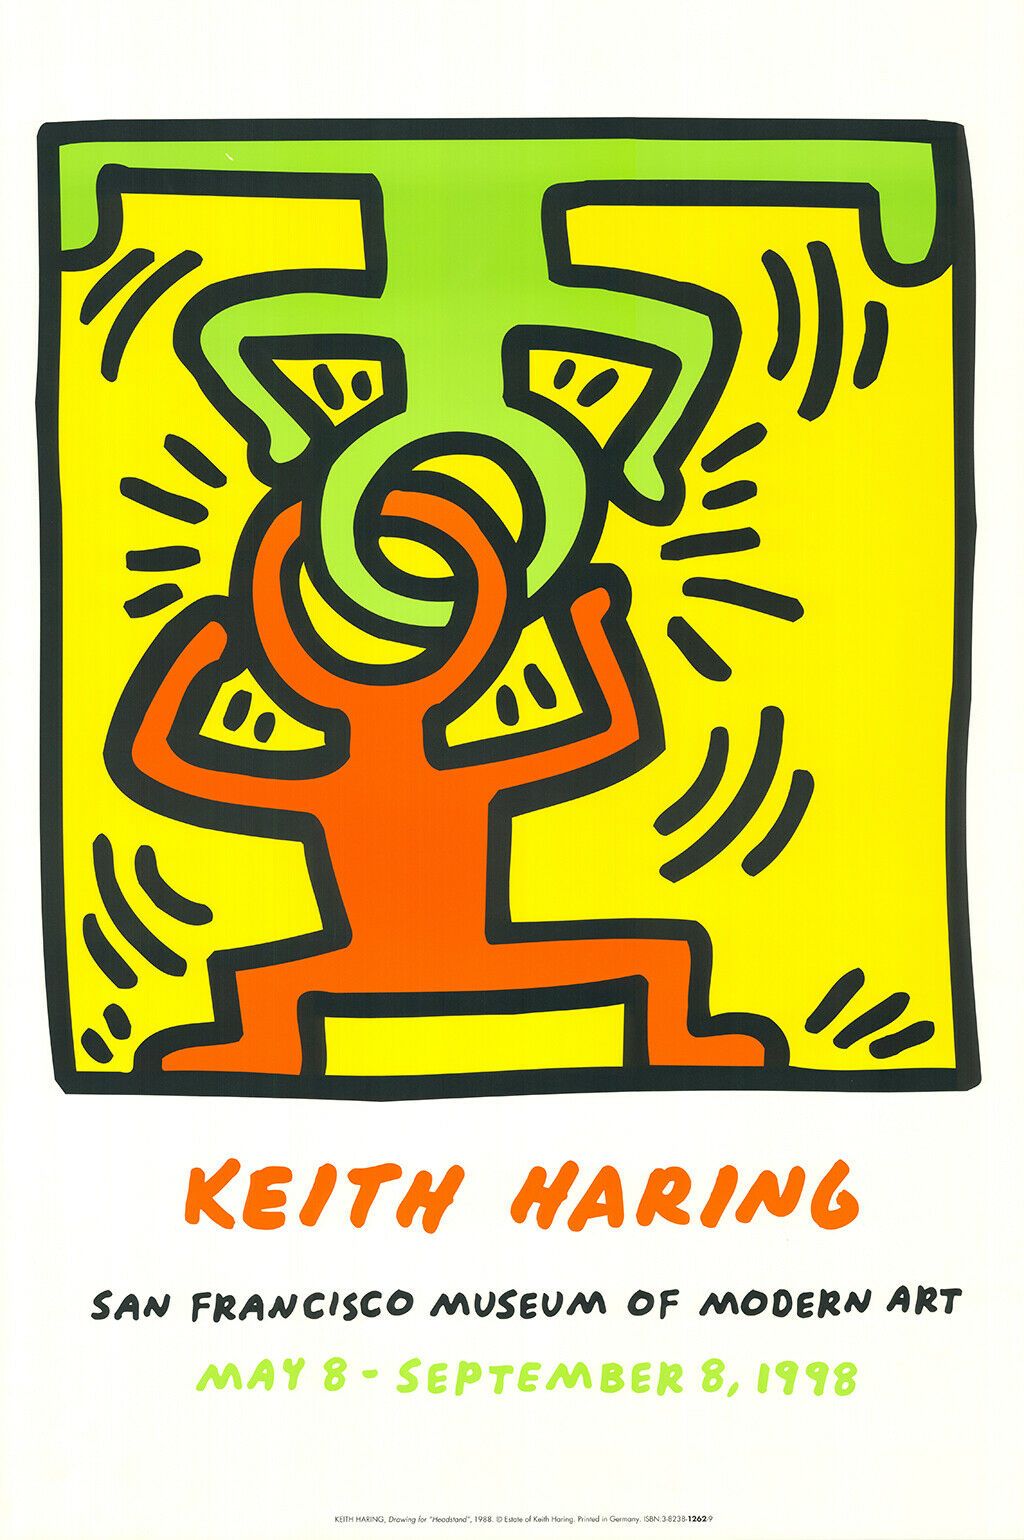 KEITH HARING Keith Haring (1958 - 1990)

(nach)

Offsetdruck auf schwerem Papier&hellip;